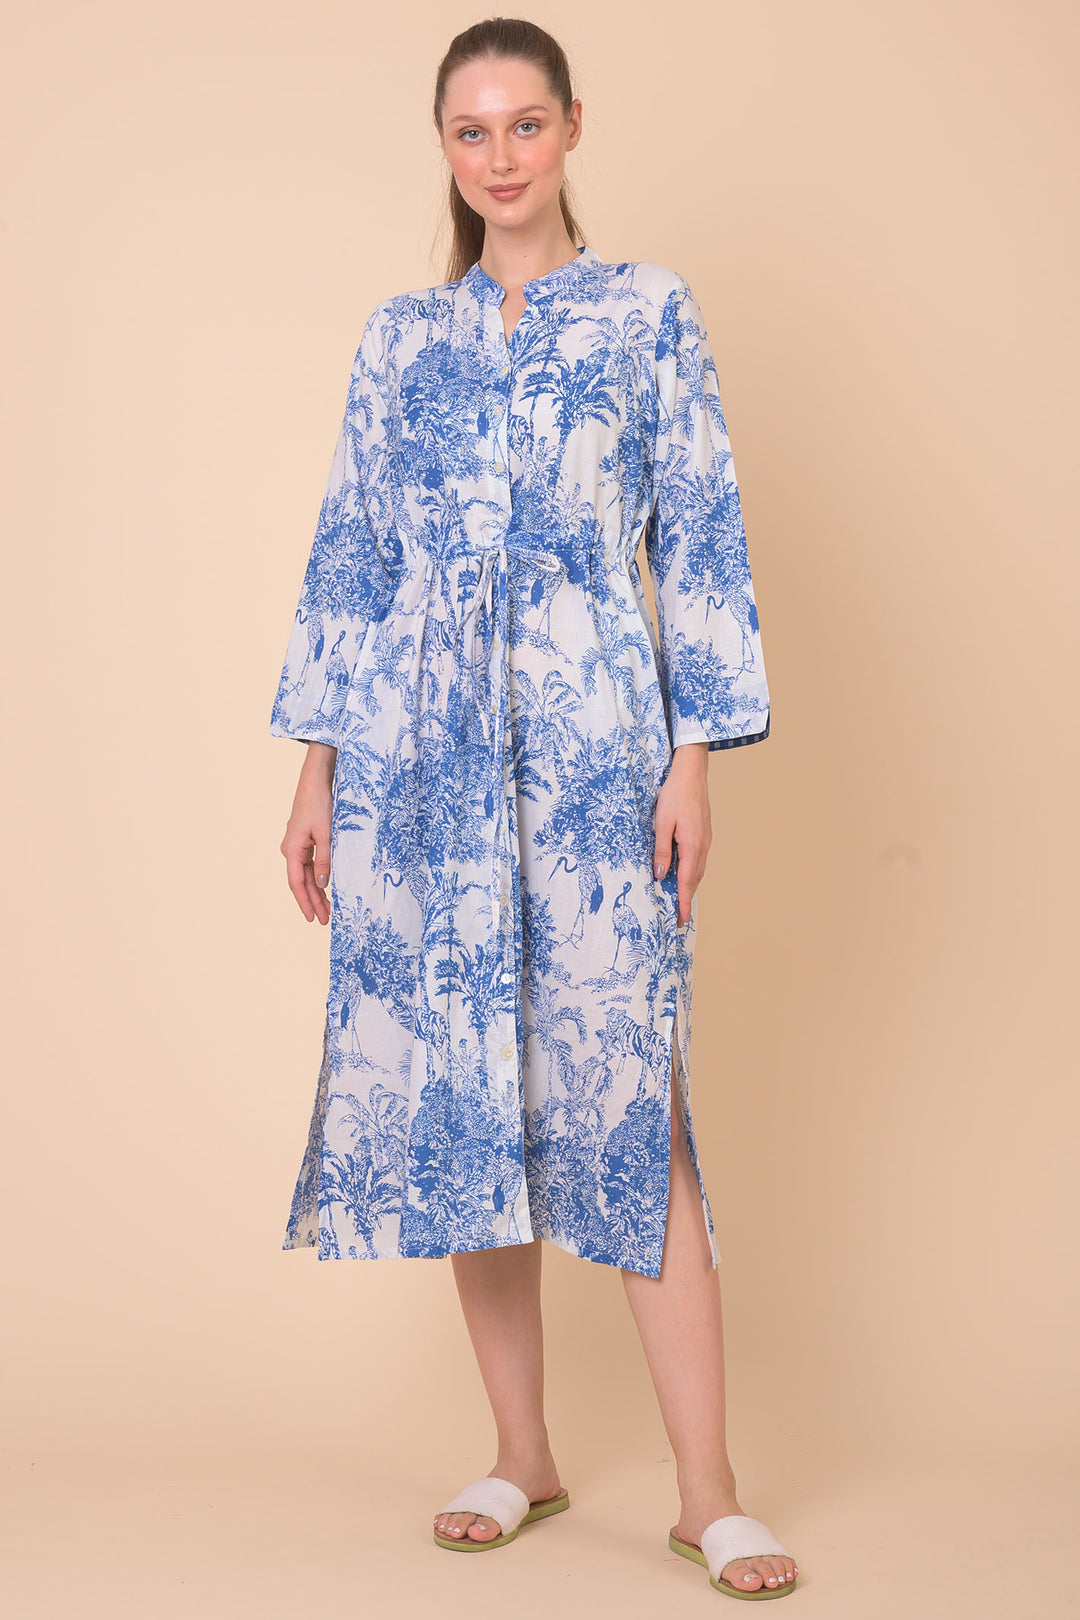 Dream AN842E Clara Blue Sketch Print Dress - Shirley Allum Boutique